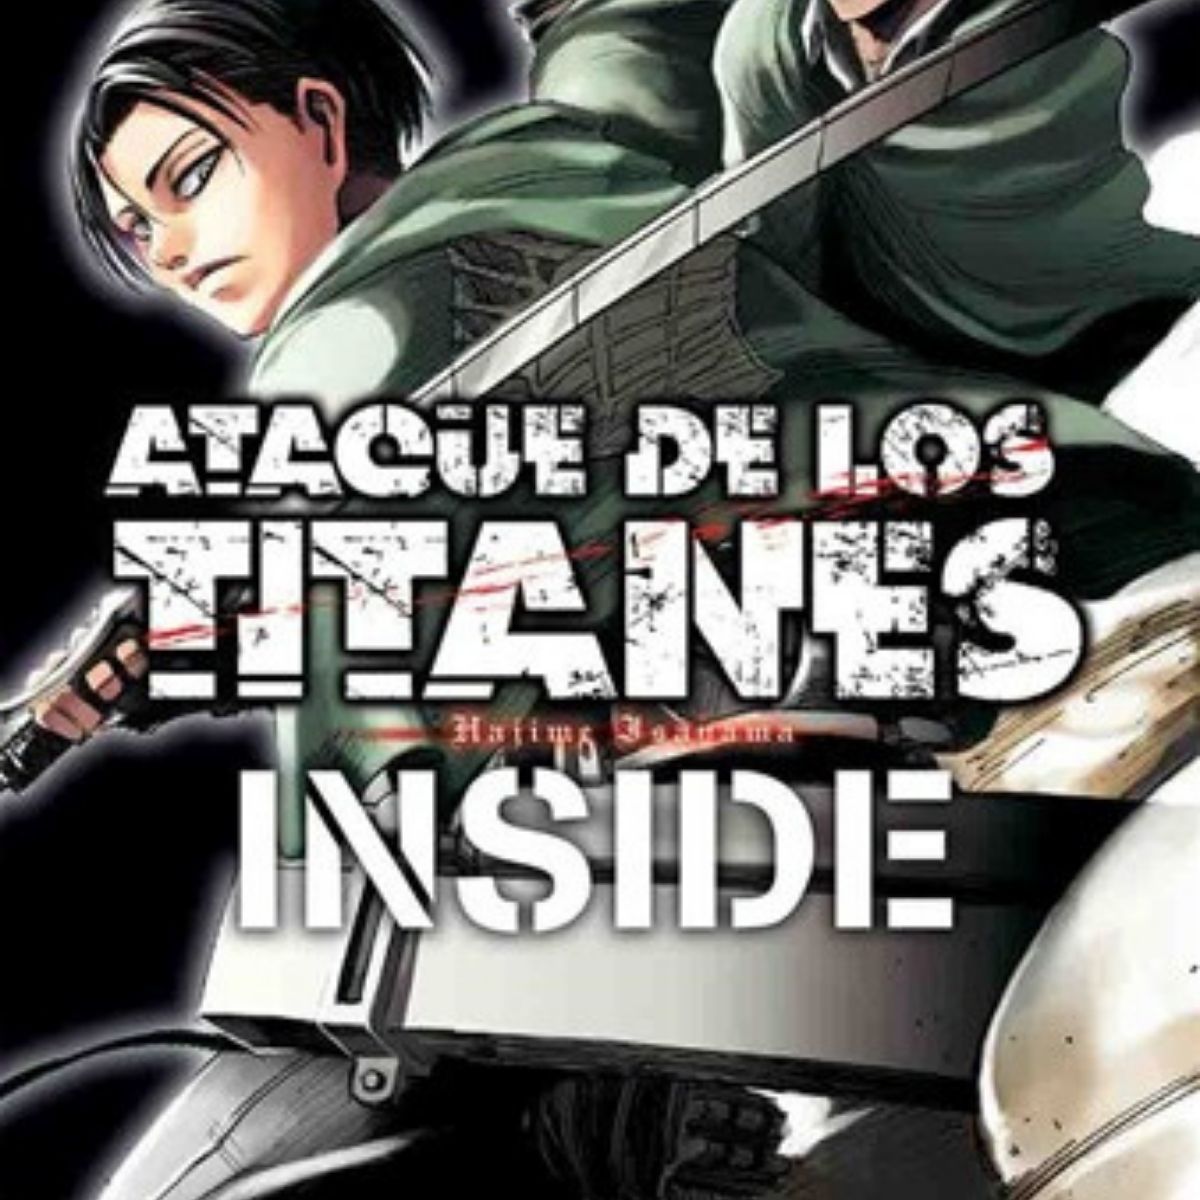 Ataque De Los Titanes INSIDE (Guide Book)